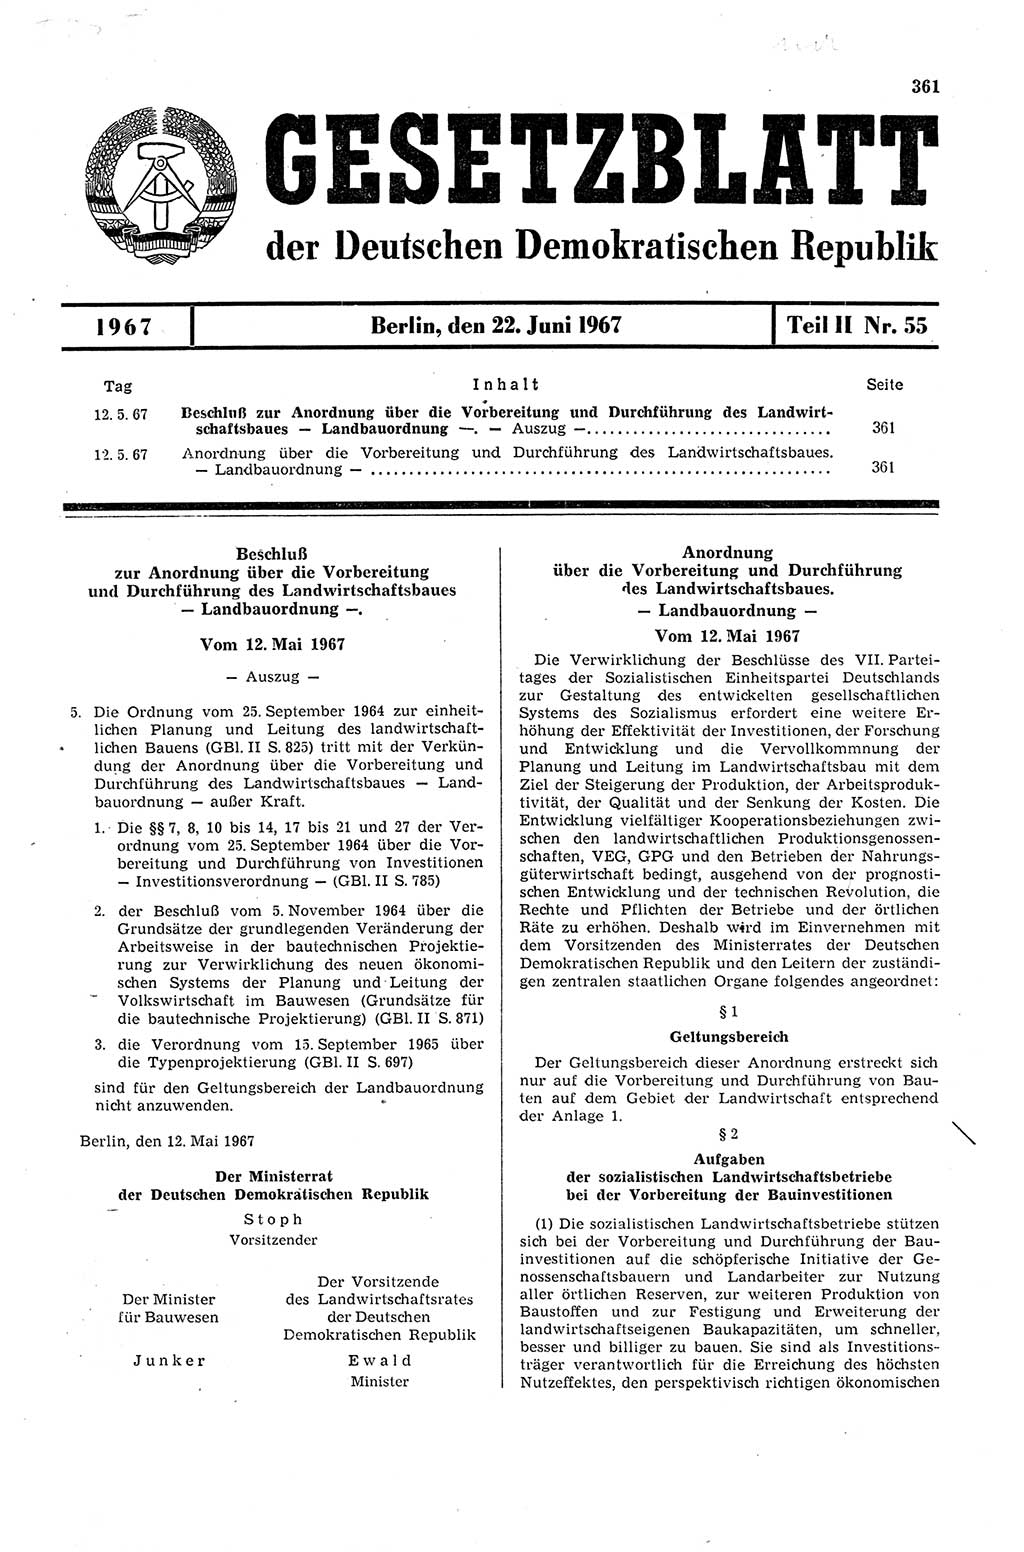 Gesetzblatt (GBl.) der Deutschen Demokratischen Republik (DDR) Teil ⅠⅠ 1967, Seite 361 (GBl. DDR ⅠⅠ 1967, S. 361)